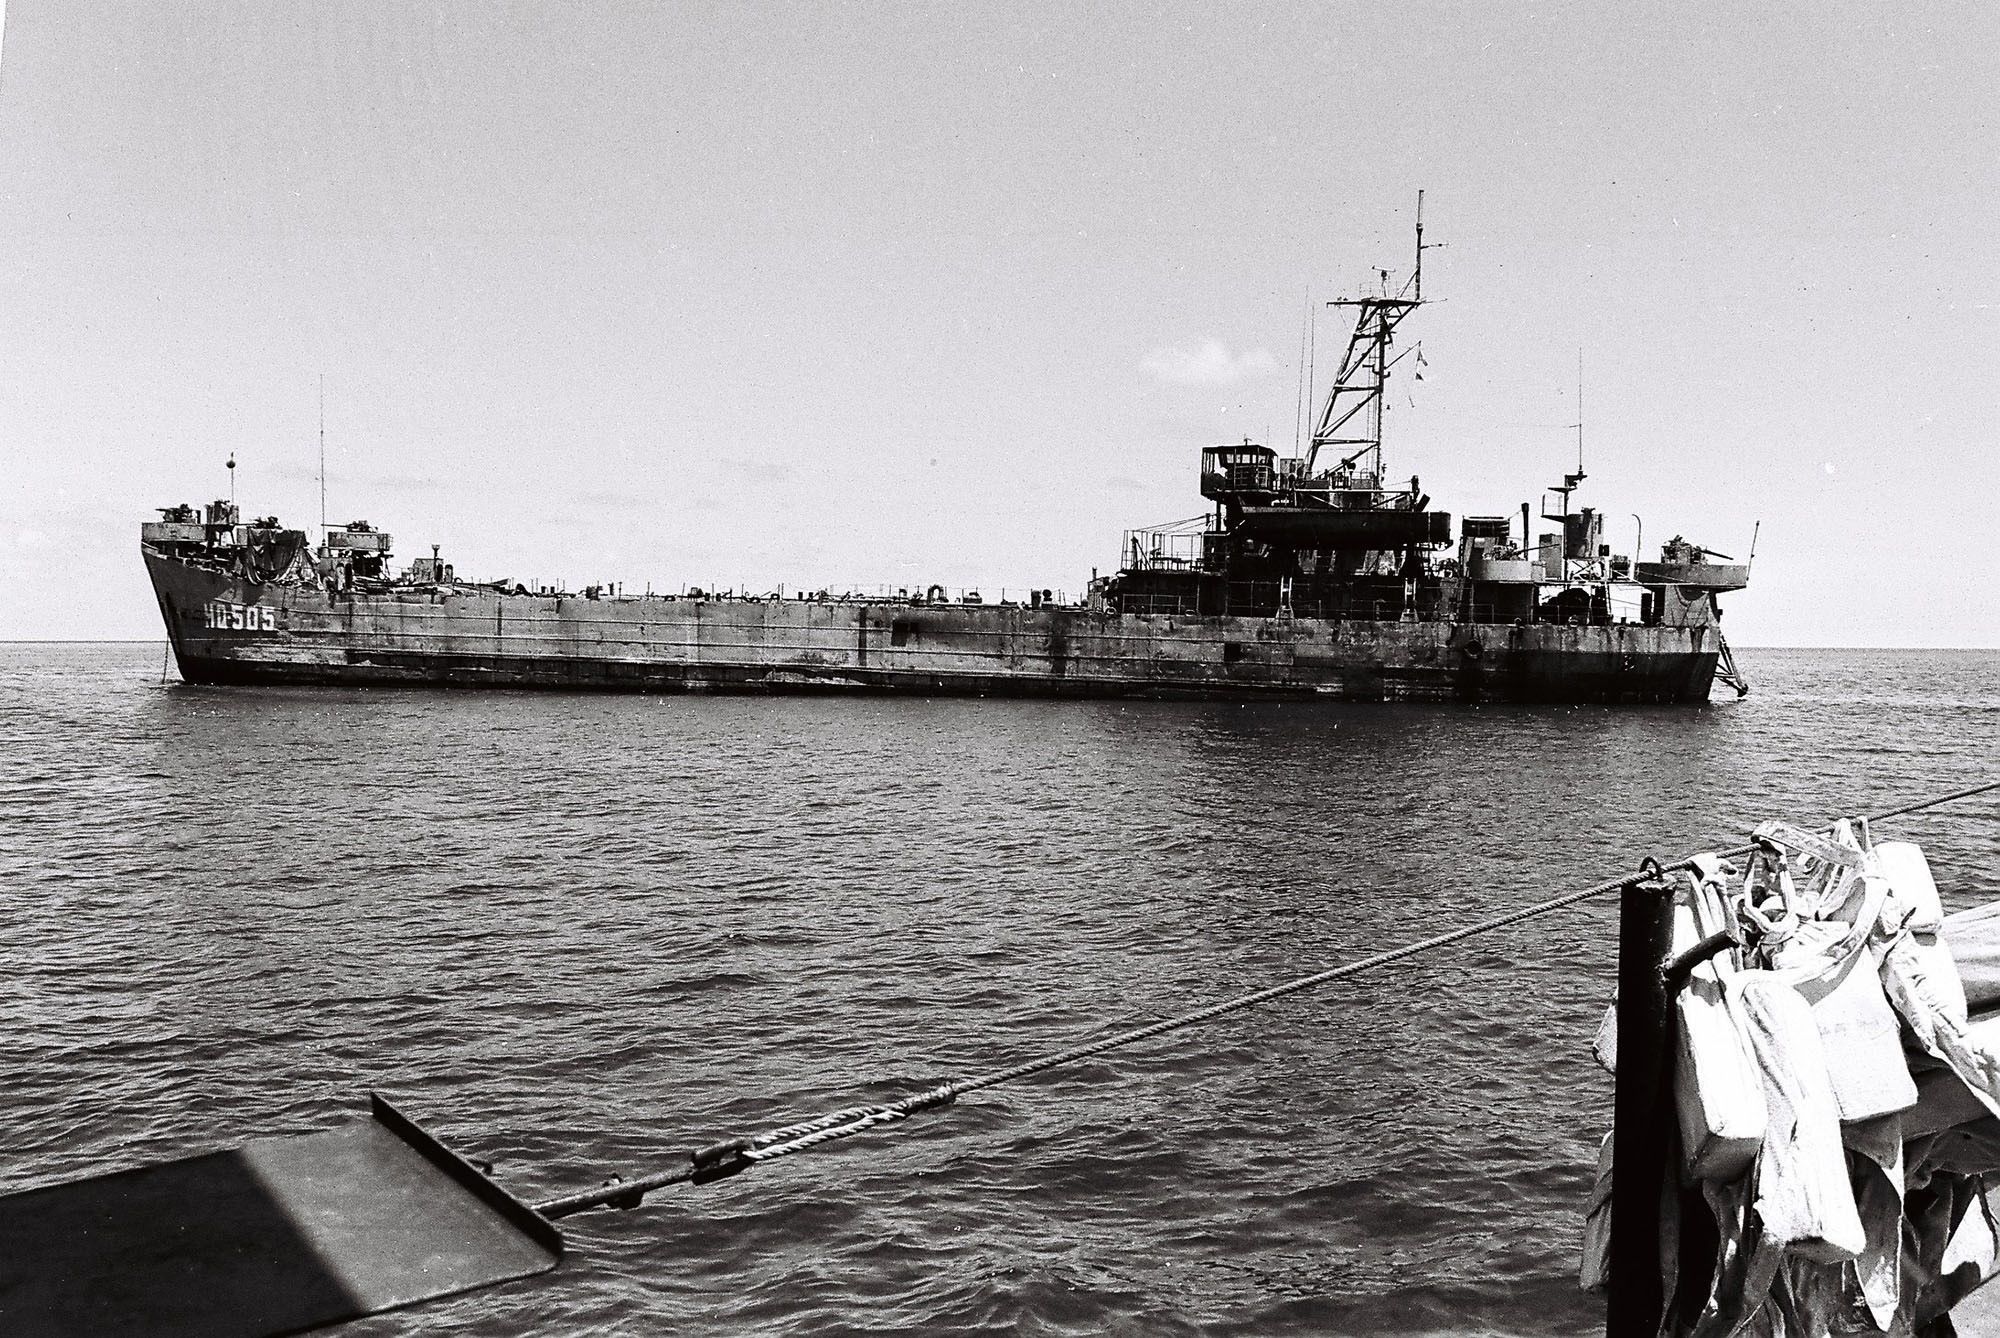 32 года назад, 14 марта 1988 года, в неравной битве, 64 вьетнамских морских солдат пали в бою, чтобы защитить суверенитет Вьетнама над каменными островами Гакма, Колин и Лендао архипелага Чыонгша. На фото: корабль HQ-505, единственный корабль, который не затонул от вражеских обстрелов, по приказом капитана Ву Ху Ле, лежал “бульдозером” на острове Колин, став «живым символом» суверенитета Вьетнама. За подвиг в бою, корабль HQ-505 был присвоен государством званием «Герой Народных Вооруженных Сил». (Источник: Архив/ВИА)